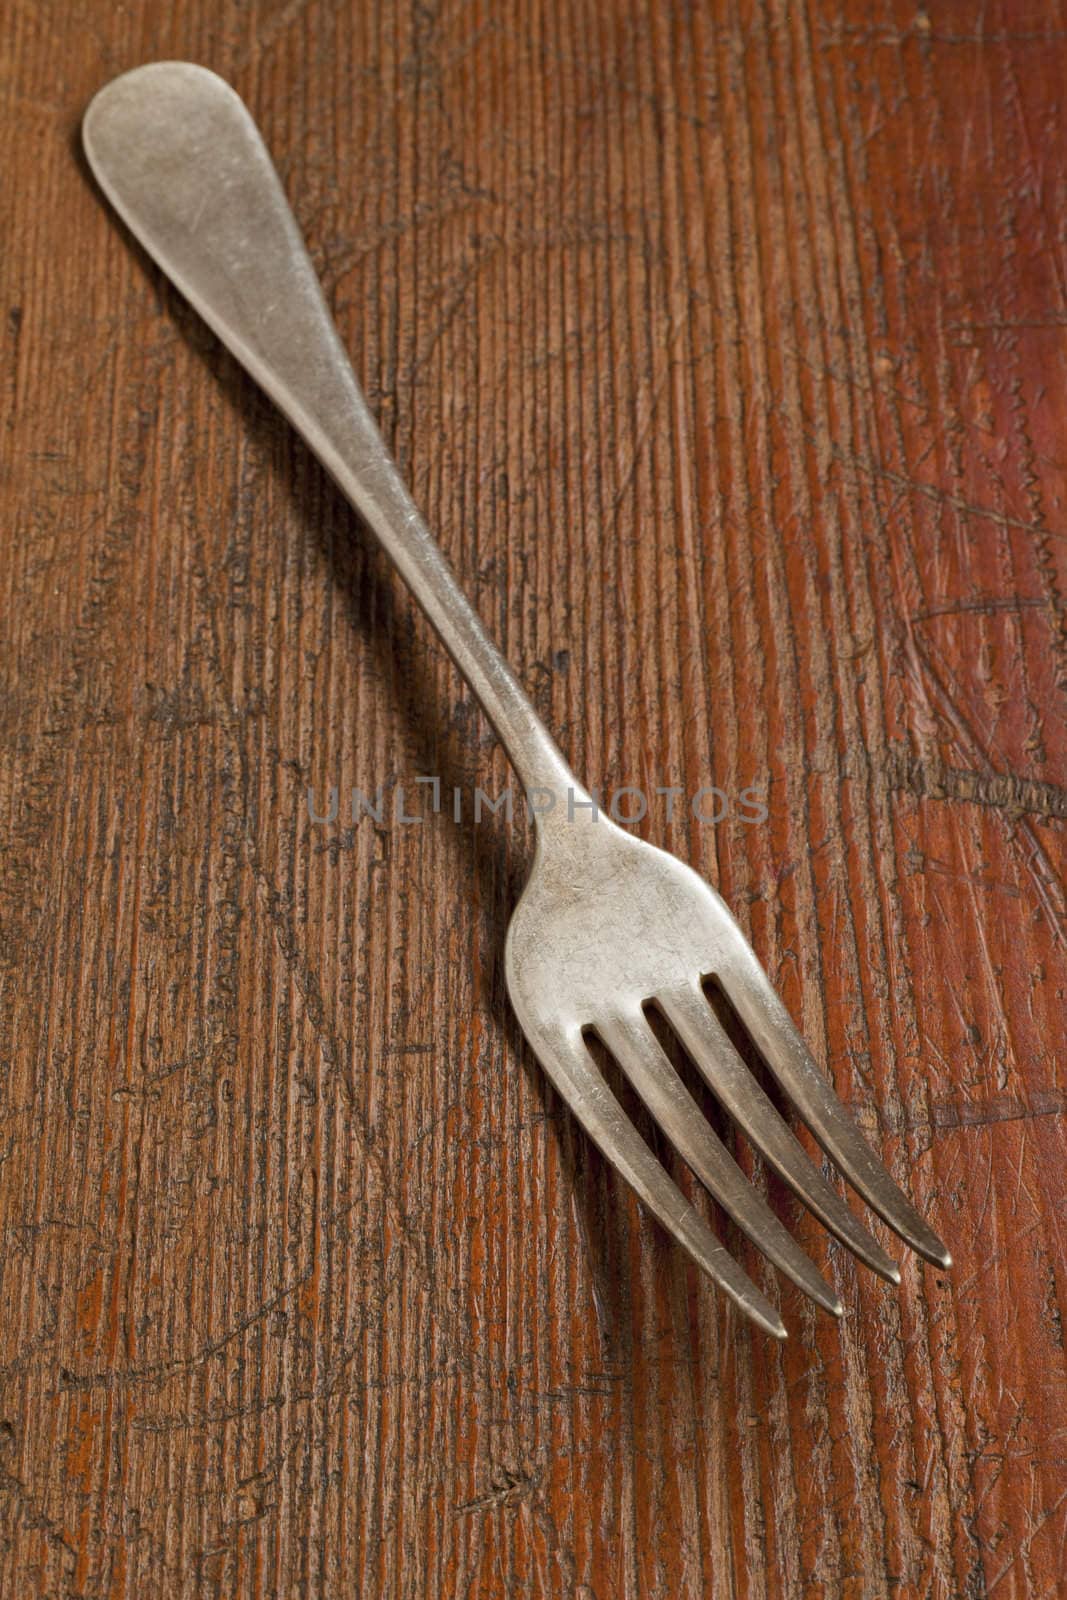 vintage fork on scratched grunge wood surface